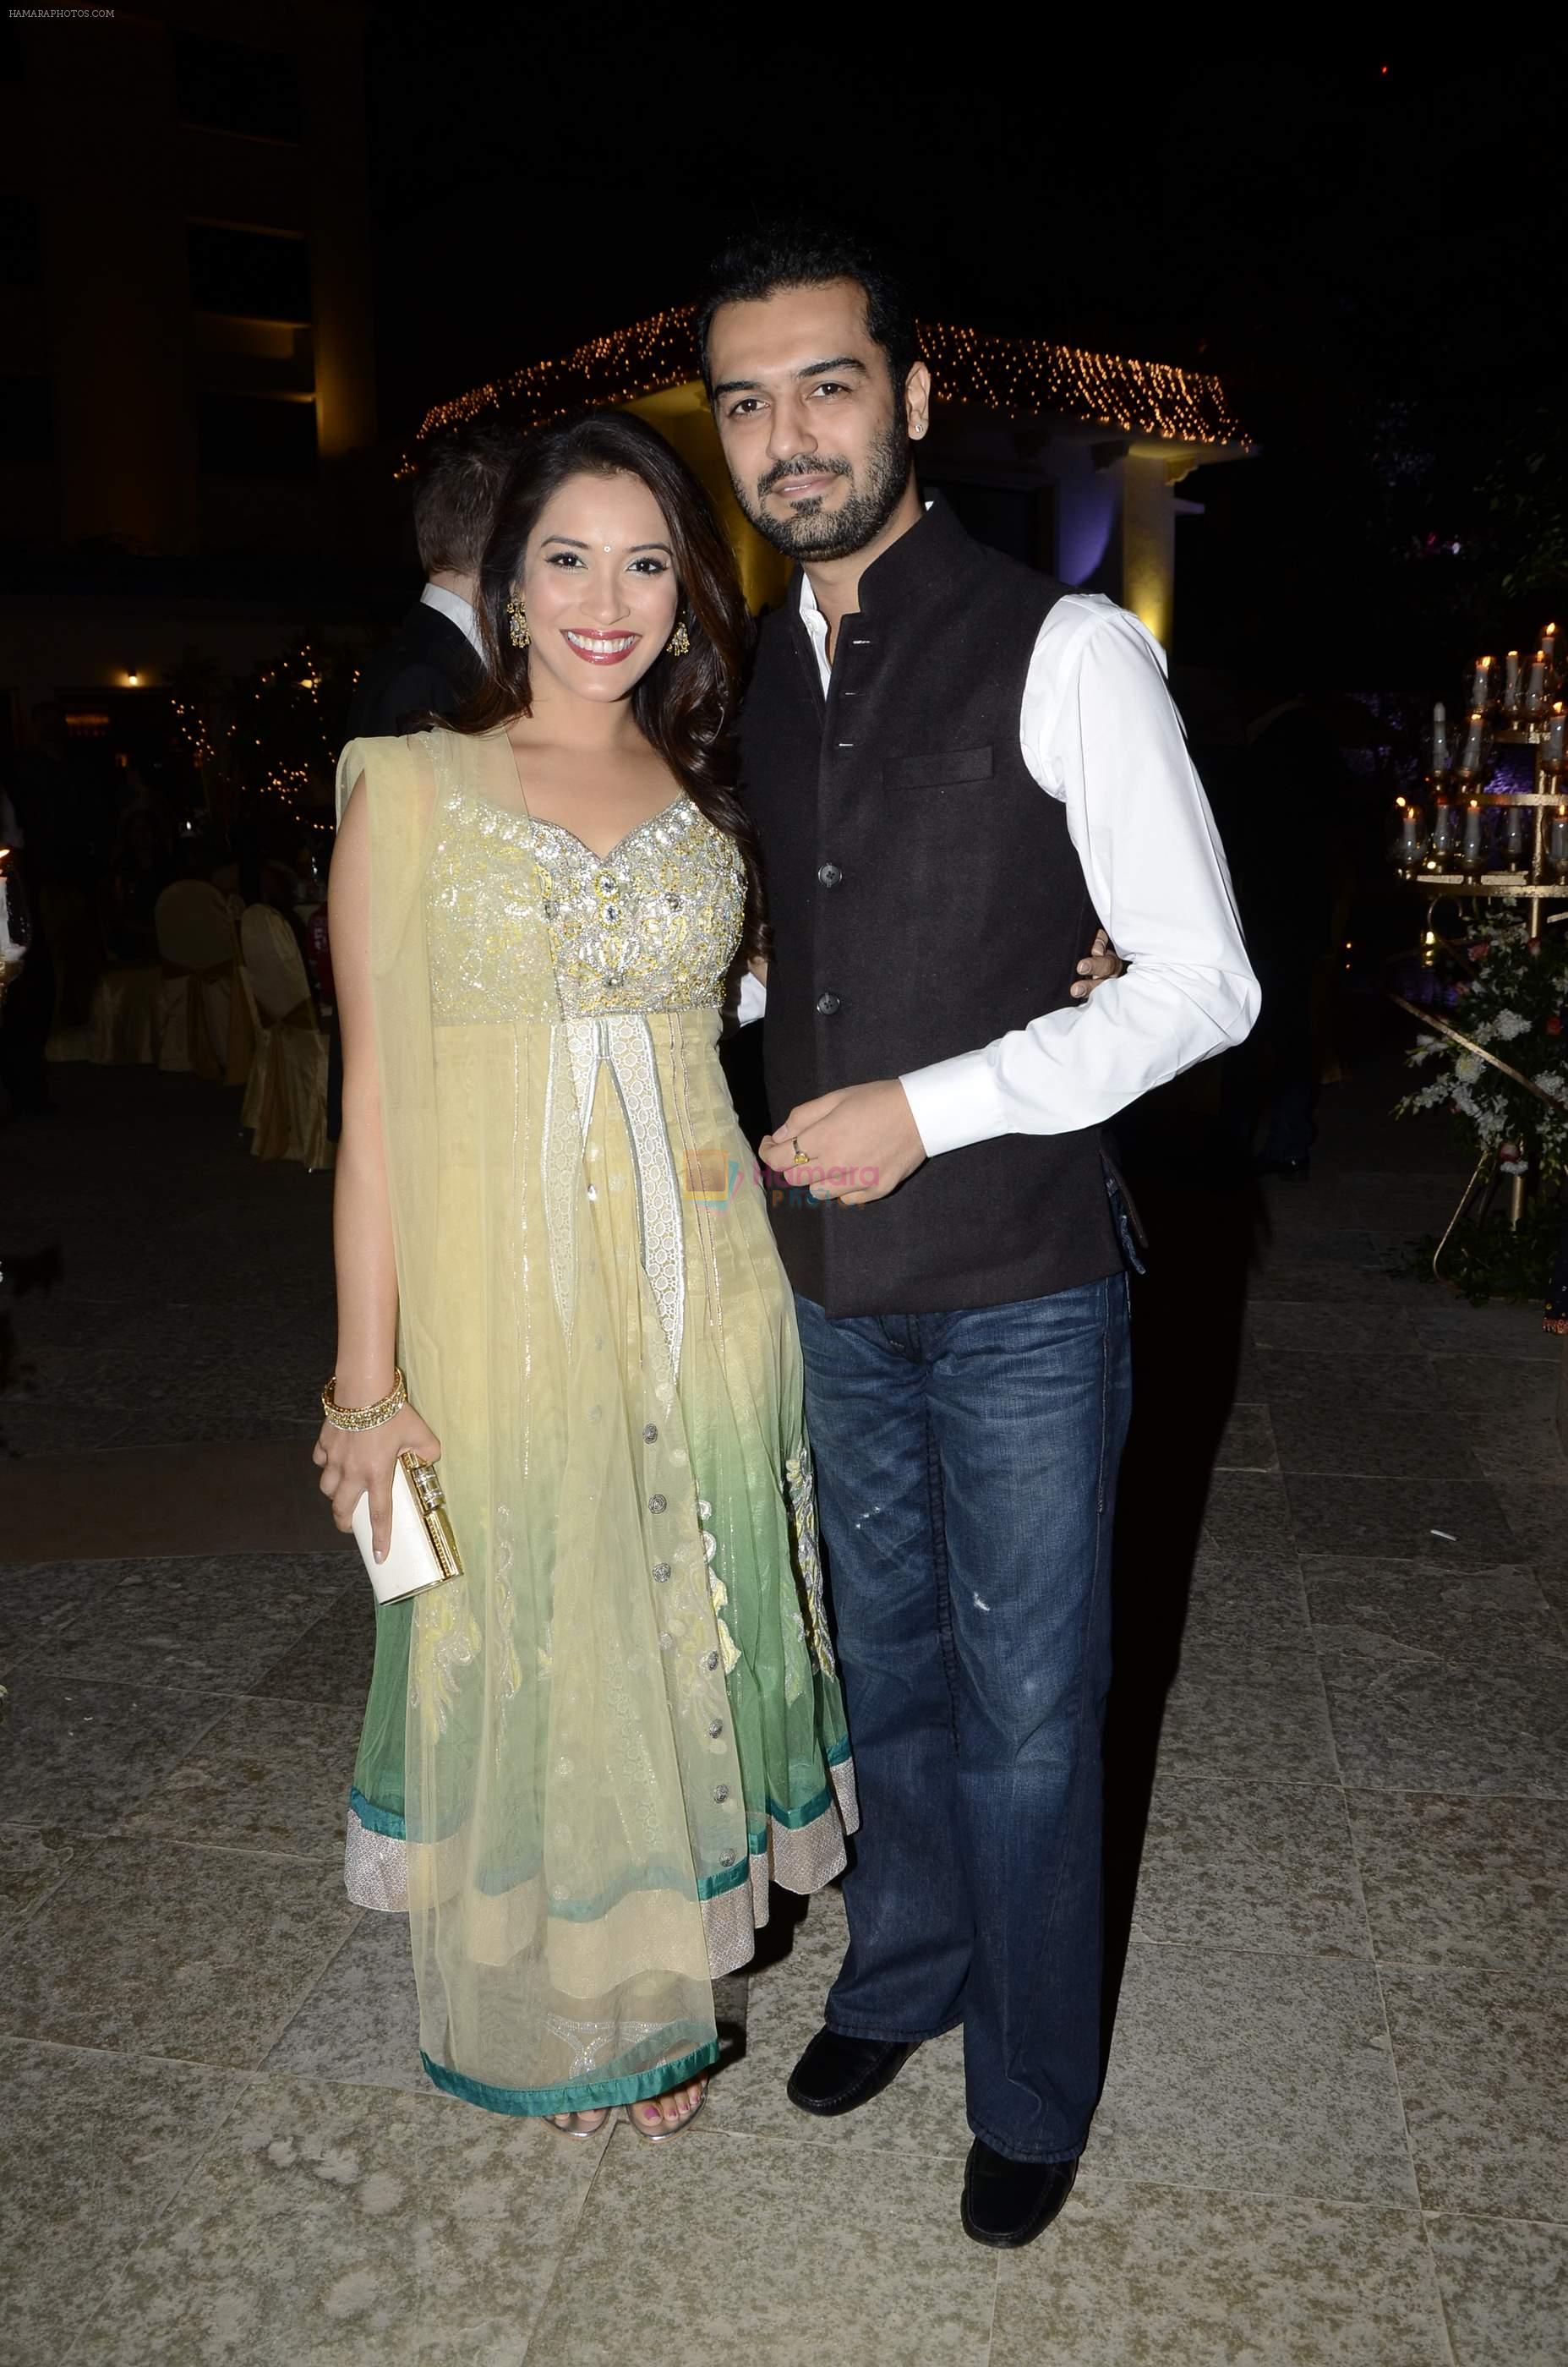 Rashmi Nigam at Riyaz Amlani and Kiran's wedding reception in Mumbai on 26th Dec 2012